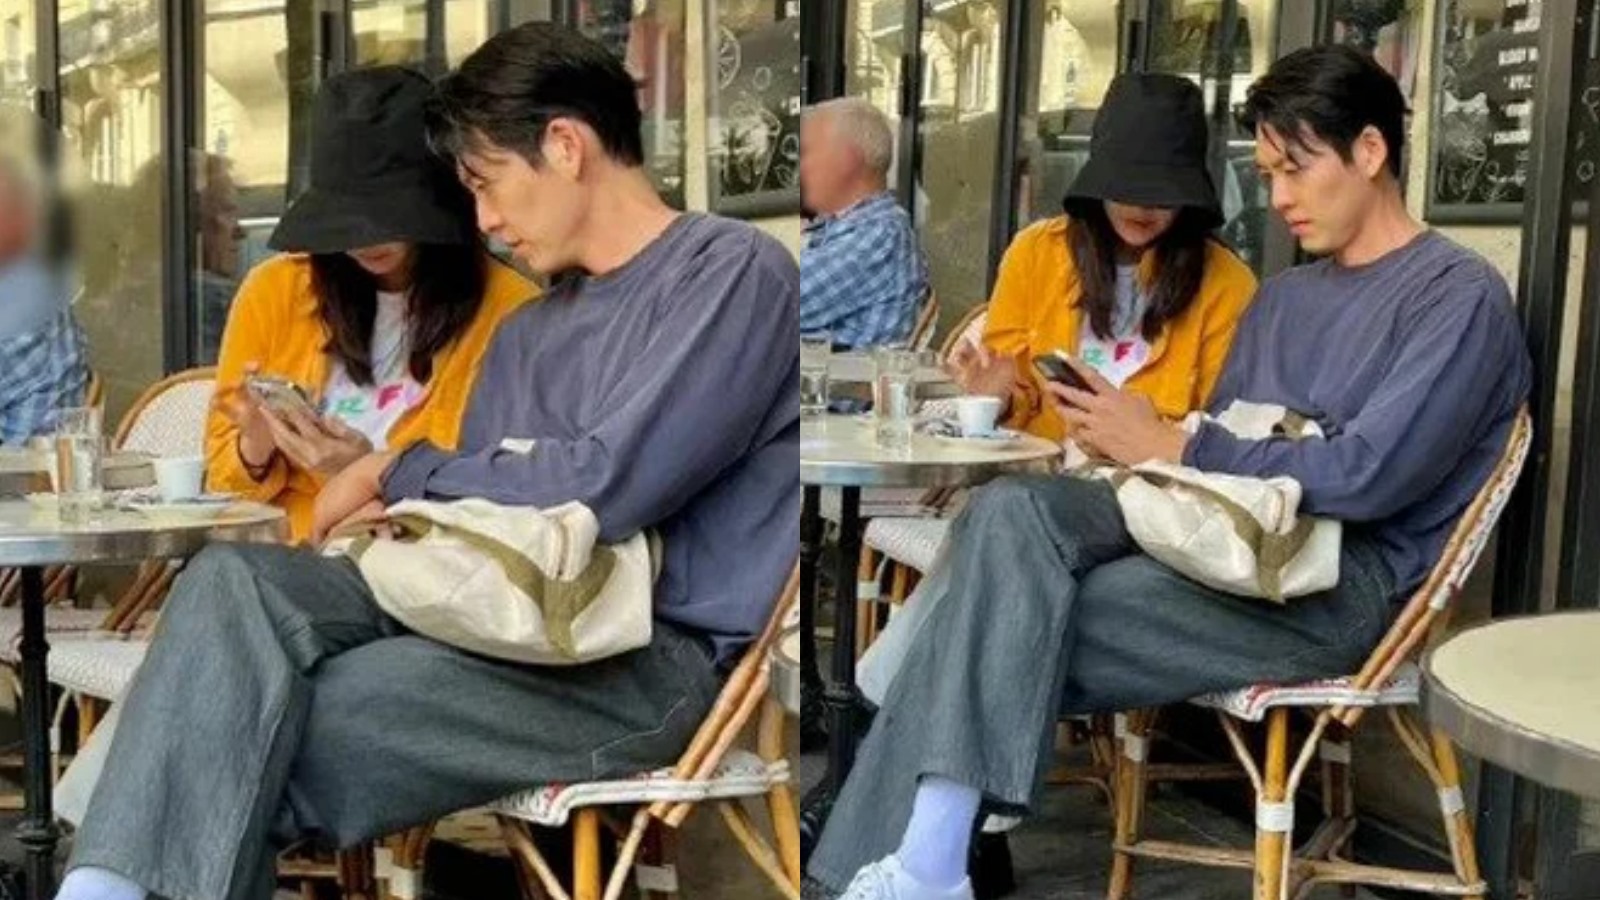 Shin Min Ah tựa đầu vào vai bạn trai ở một quán cà phê. Loạt ảnh cặp sao hẹn hò được khán giả chia sẻ liên tục trên các diễn đàn. Ảnh: Weibo.